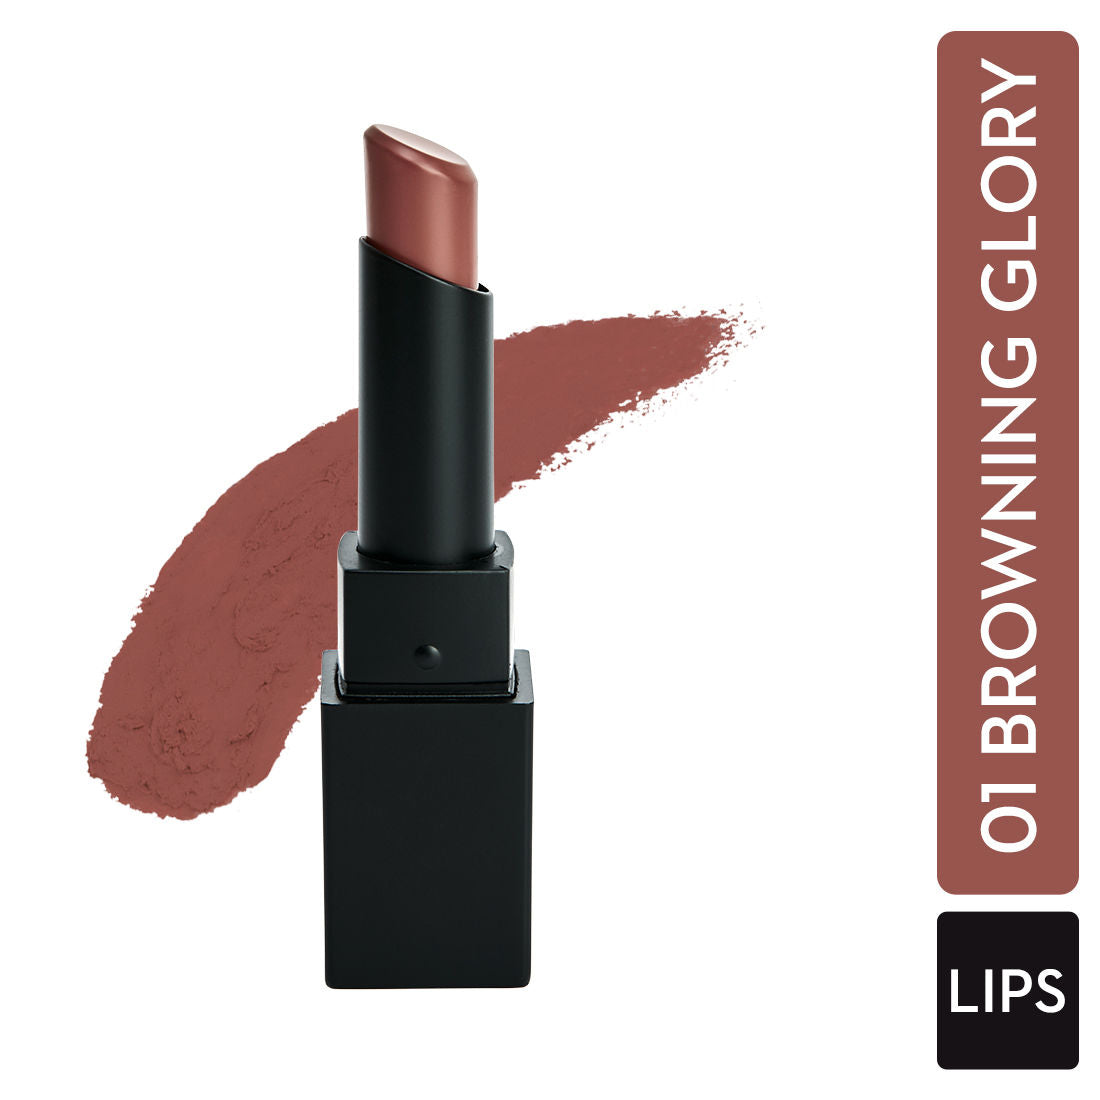 Sugar Nothing Else Matter Longwear Lipstick - 01 Browning Glory (Caramel Nude) (3.2G)